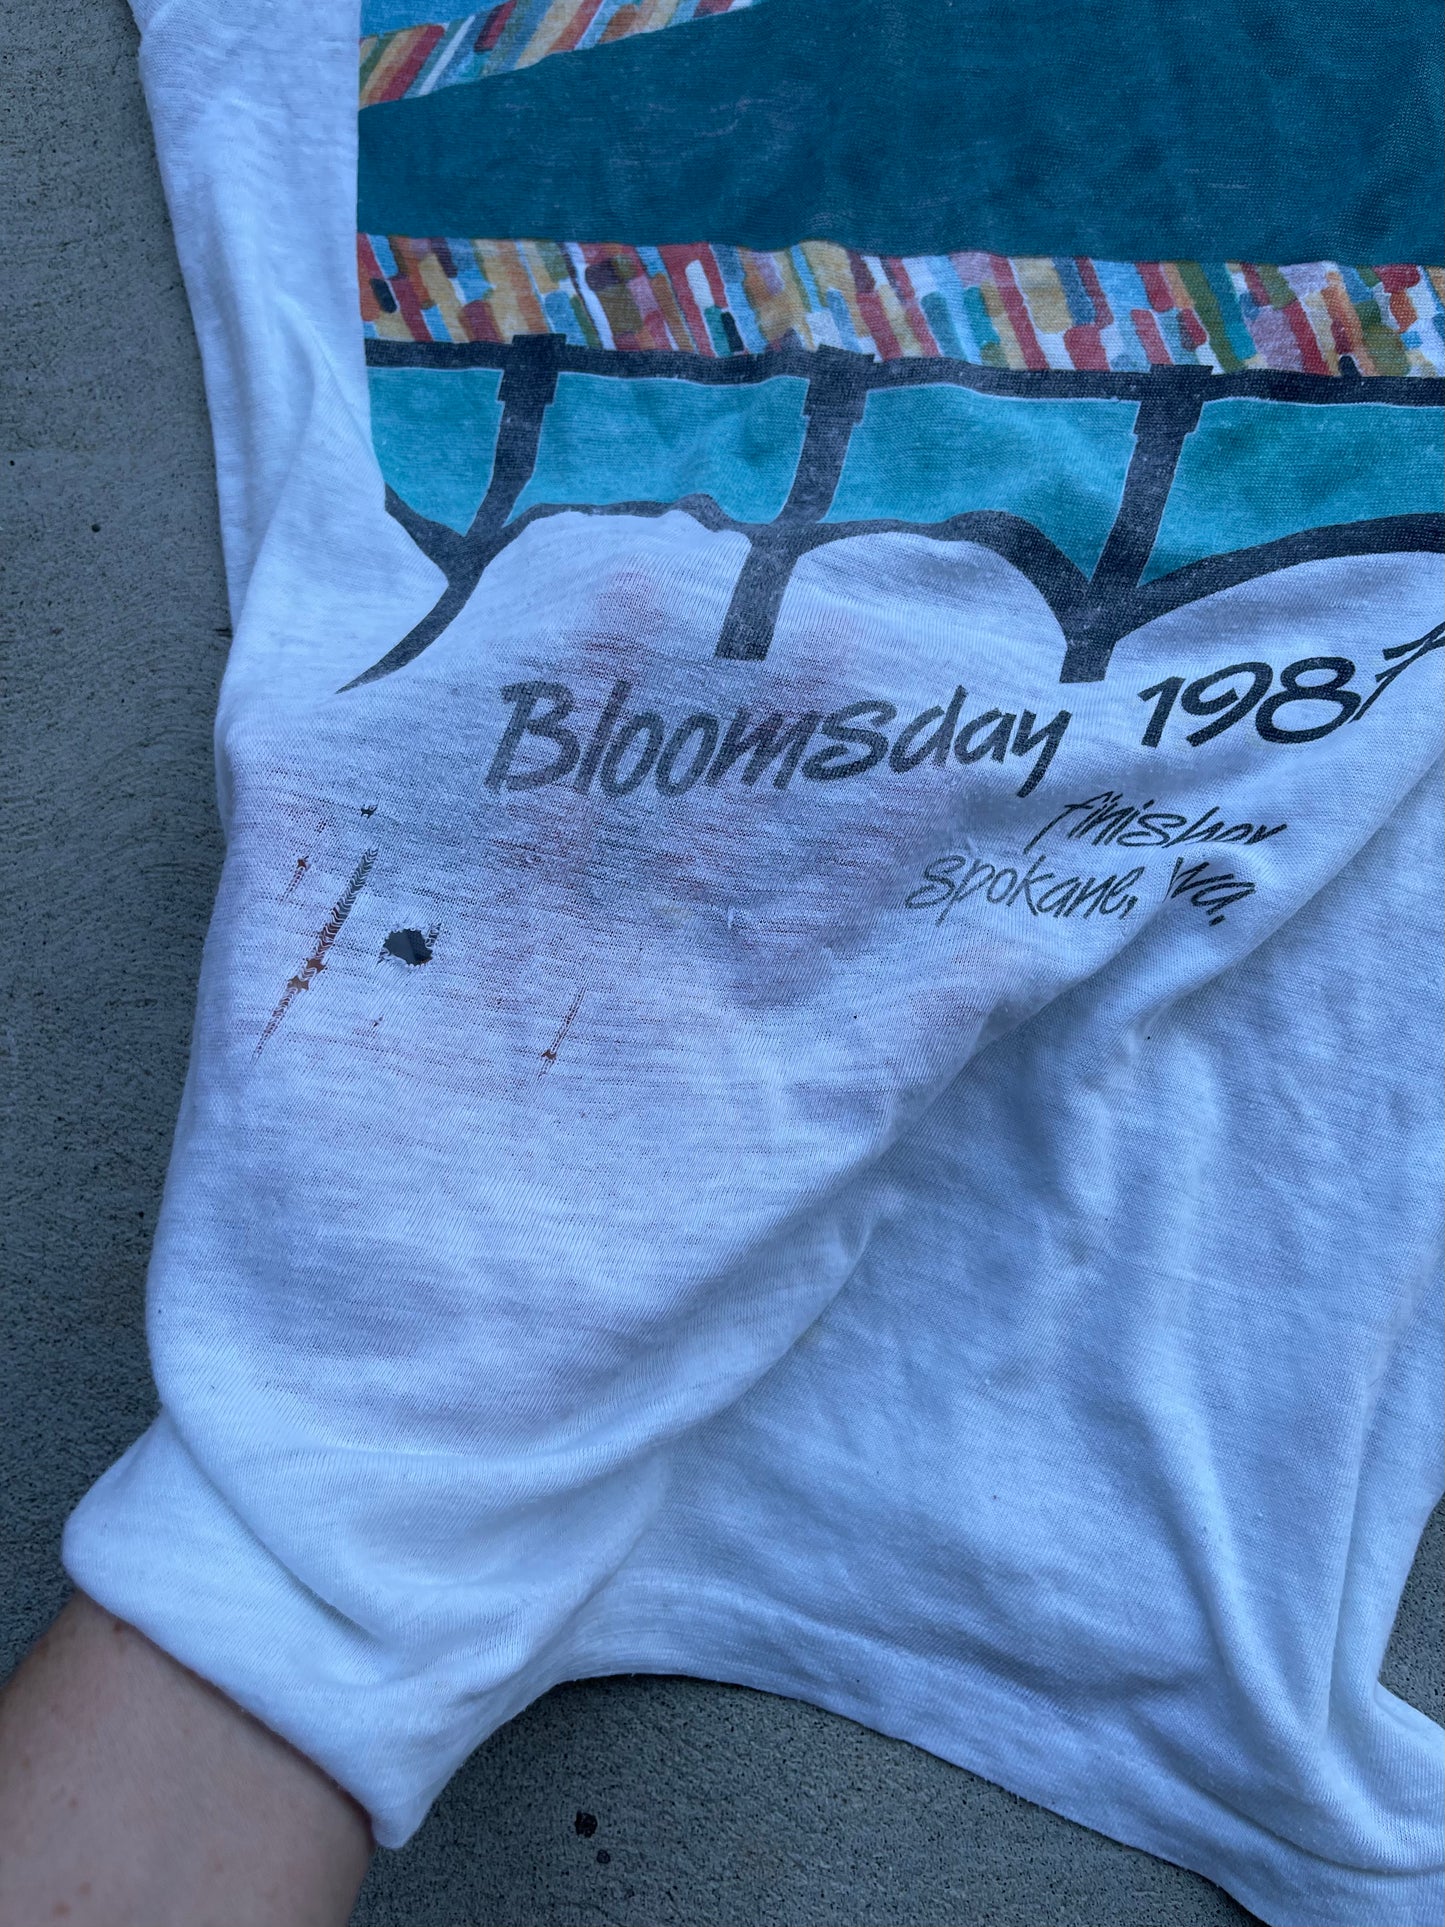 Vintage 1987 Bloomsday Tee - S/M